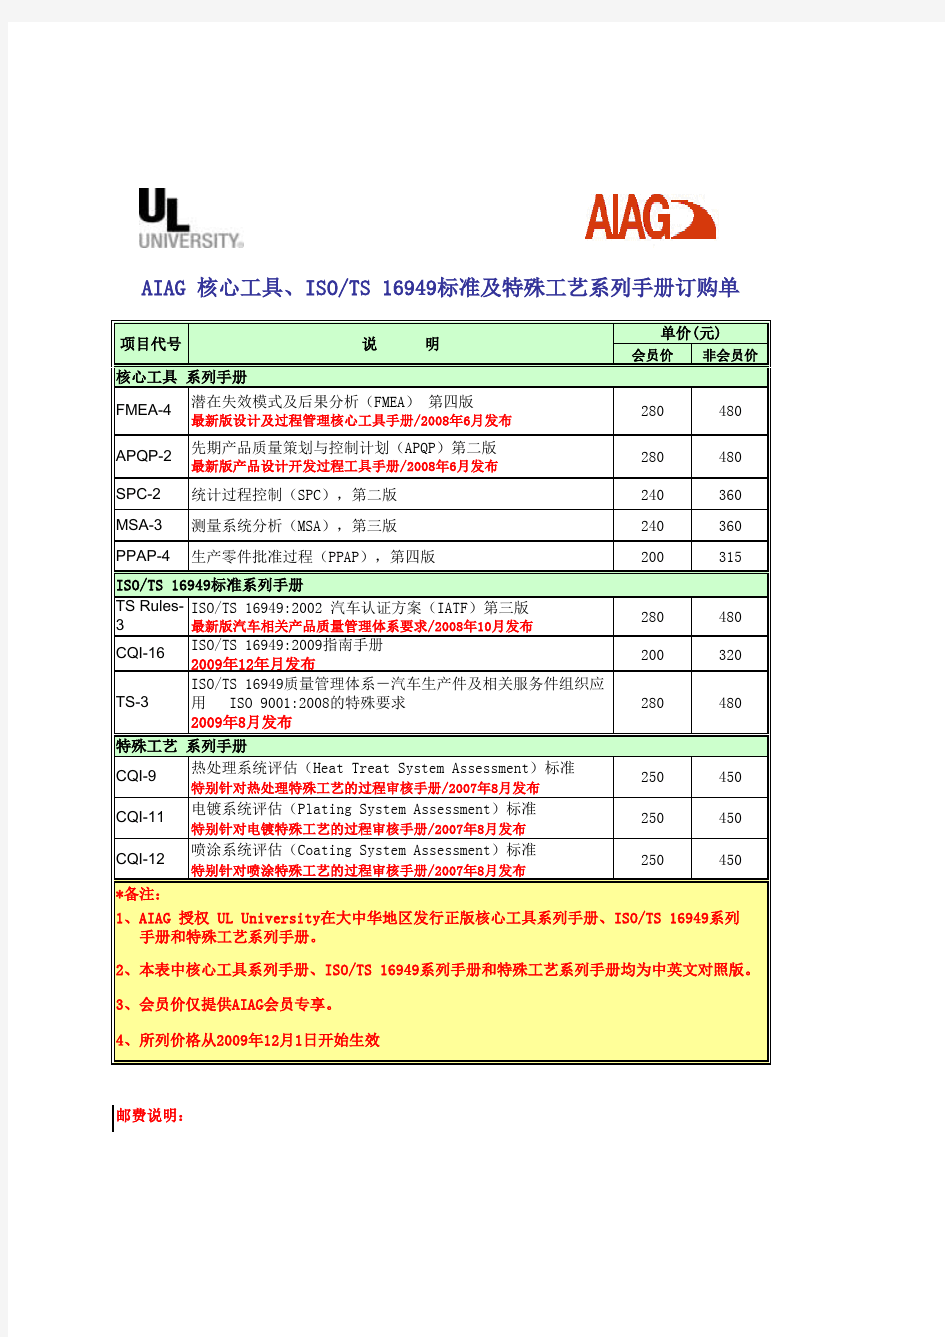 AIAG五大工具手册订购单